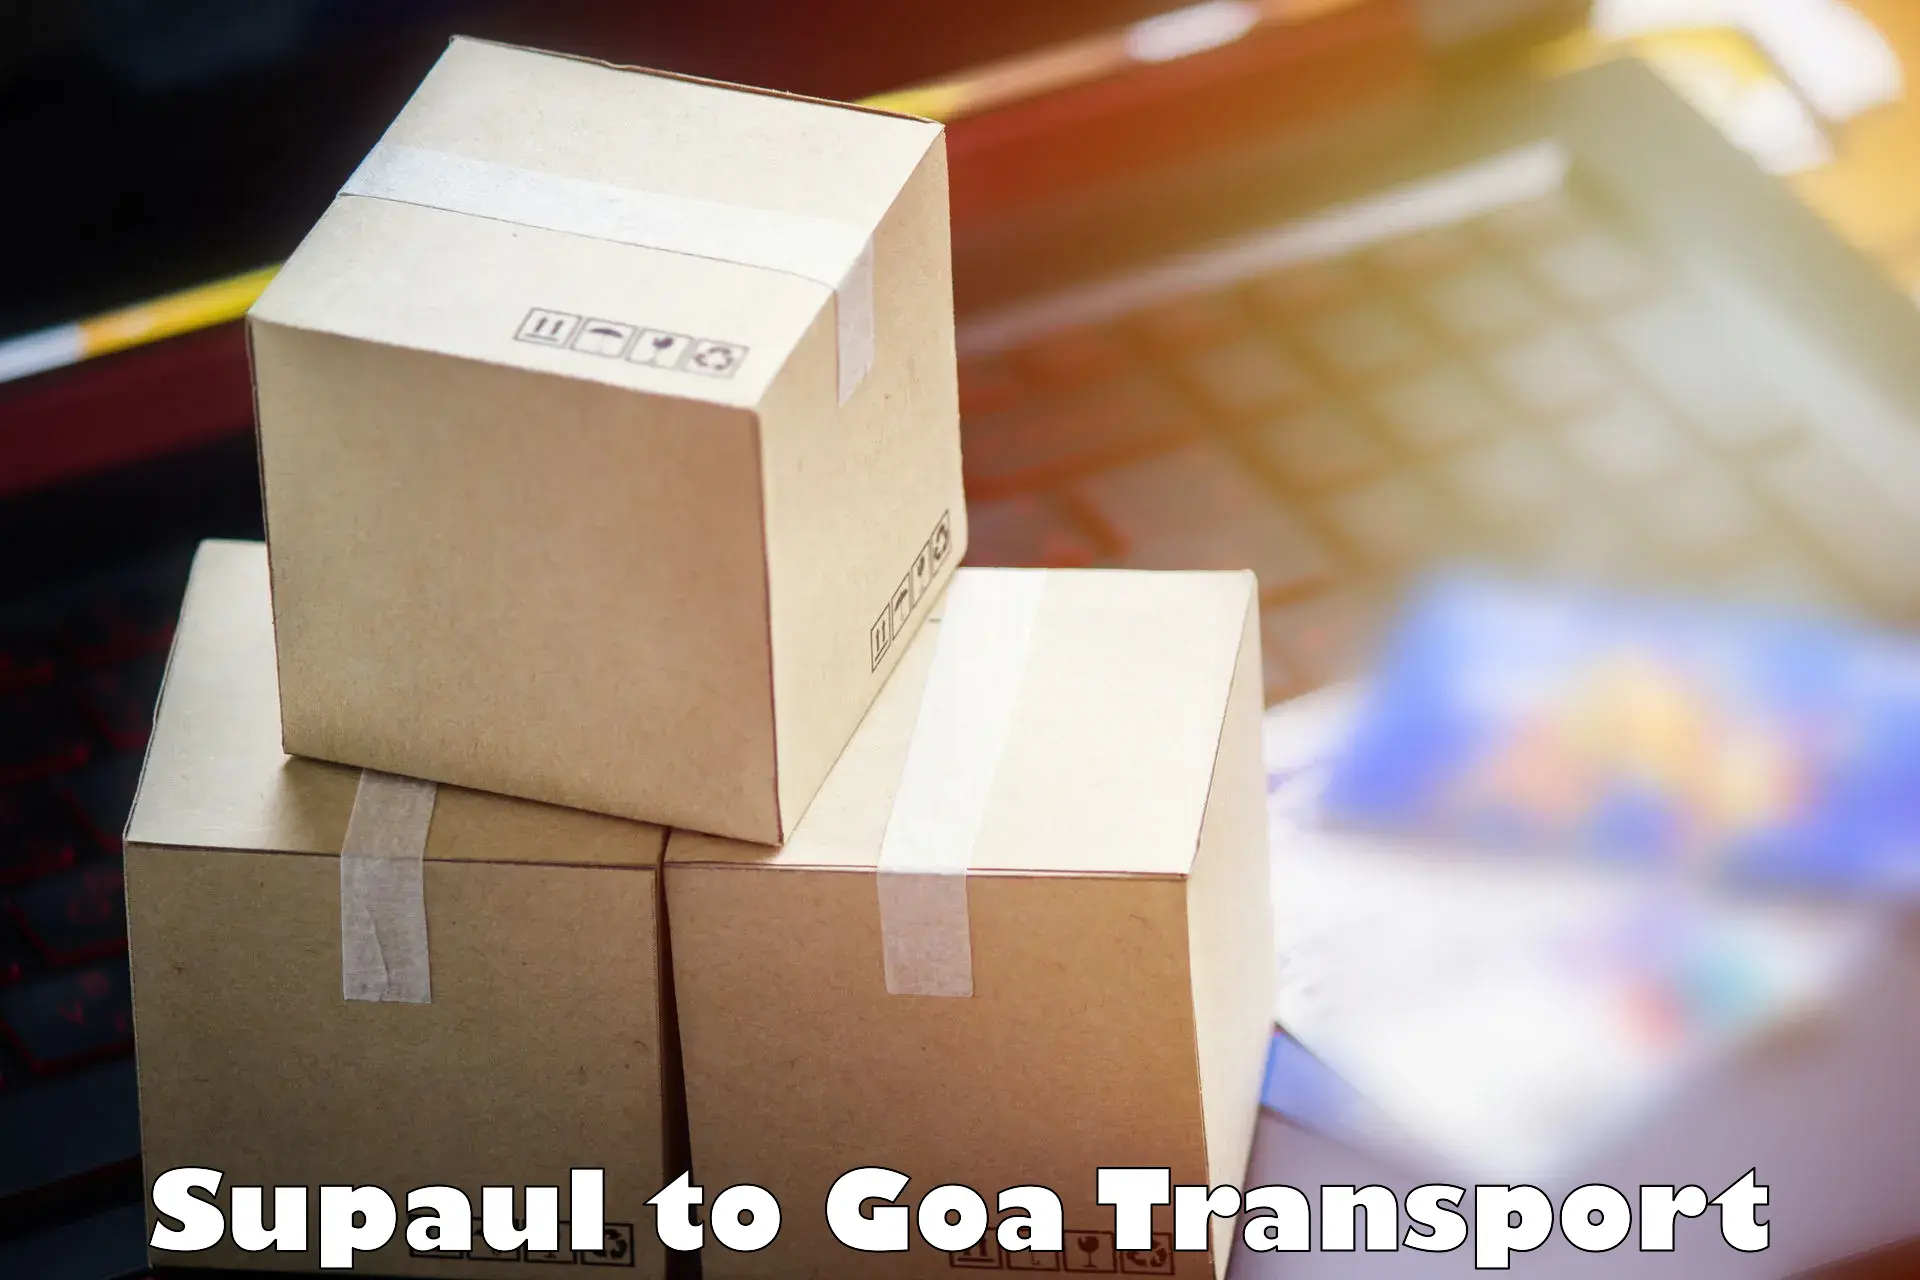 Container transportation services Supaul to Vasco da Gama